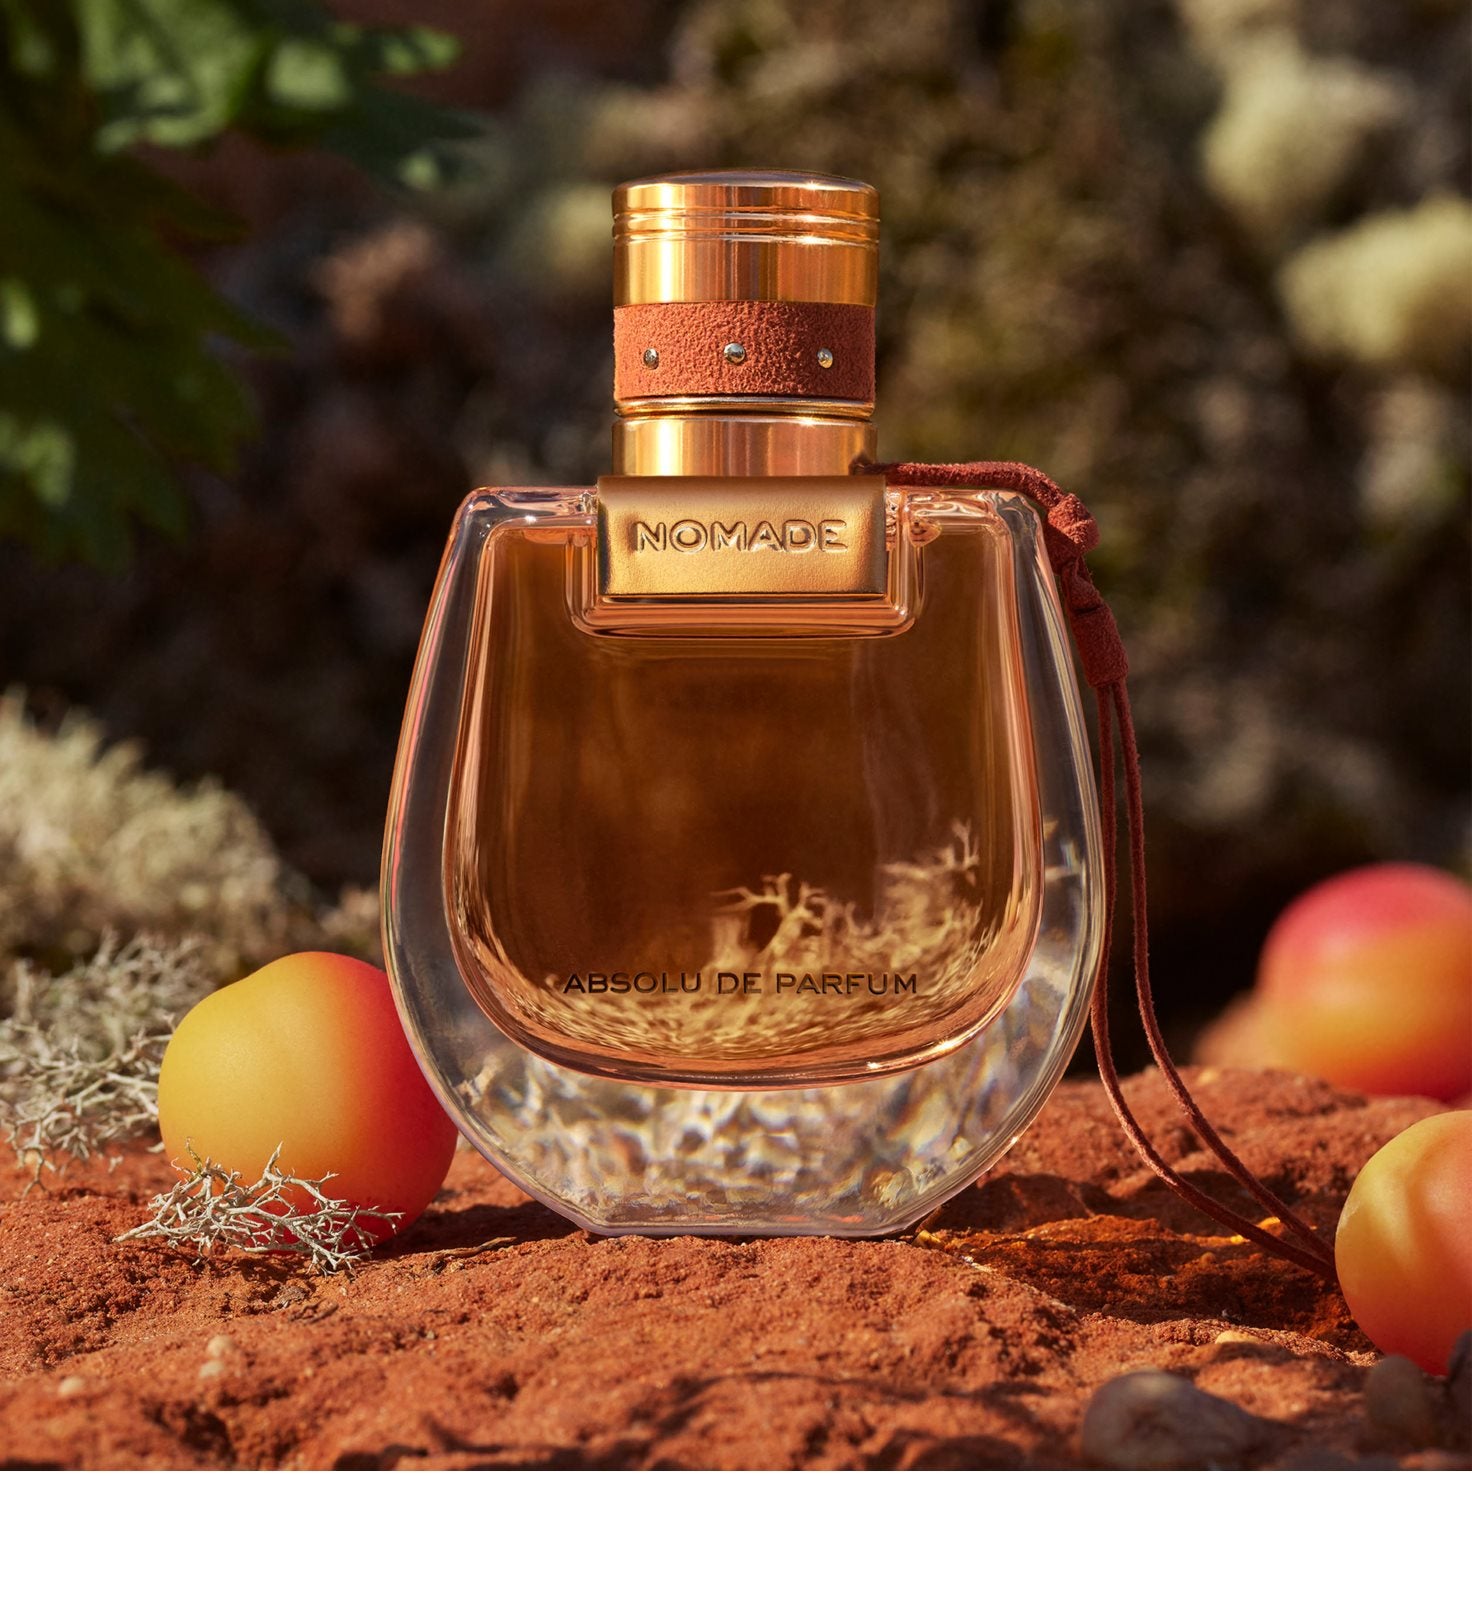 Chloé Nomade Absolu de Parfum 30 ml – BS24 Switzerland AG